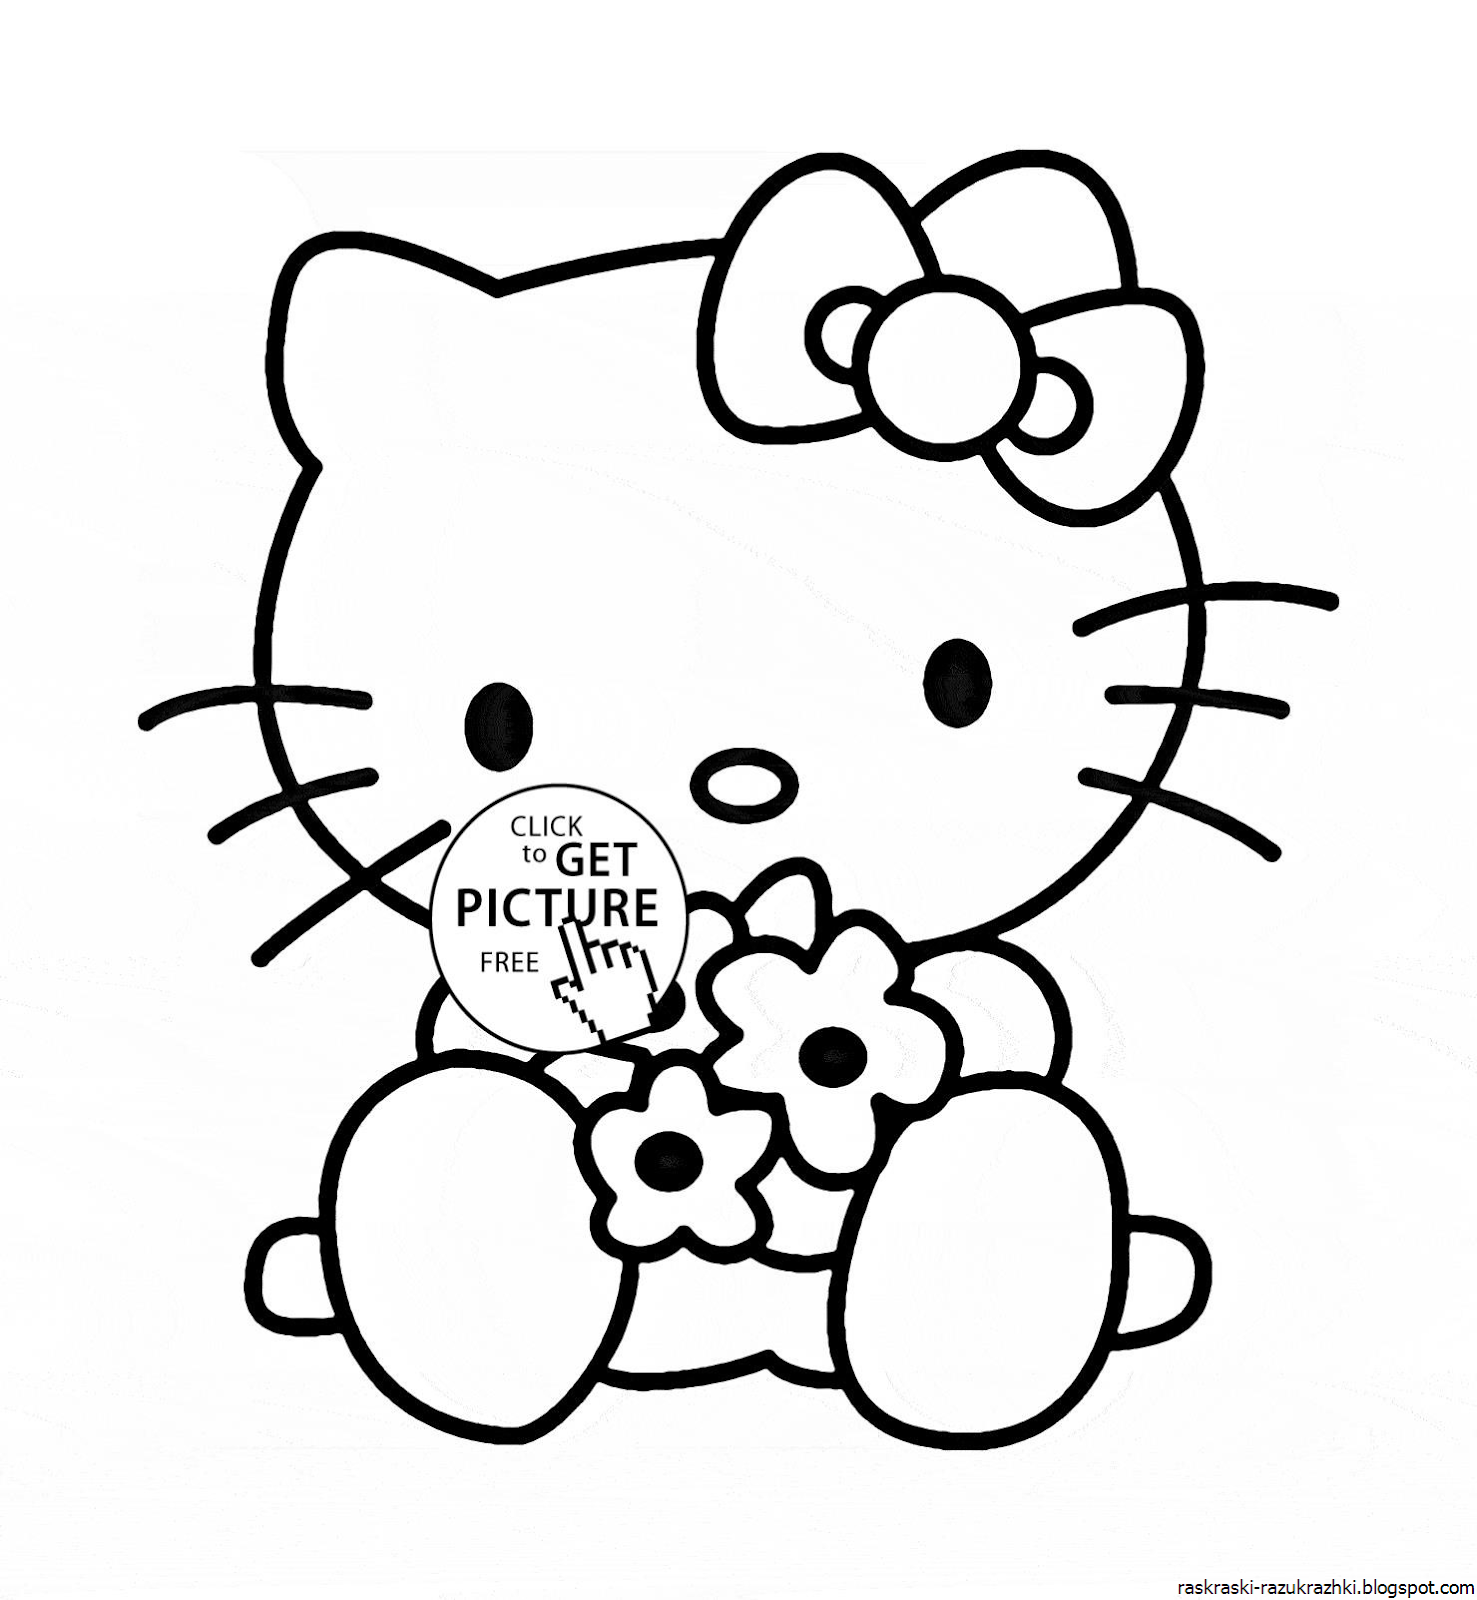 Раскраски Хелло Китти (Hello Kitty) распечатать бесплатно или скачать